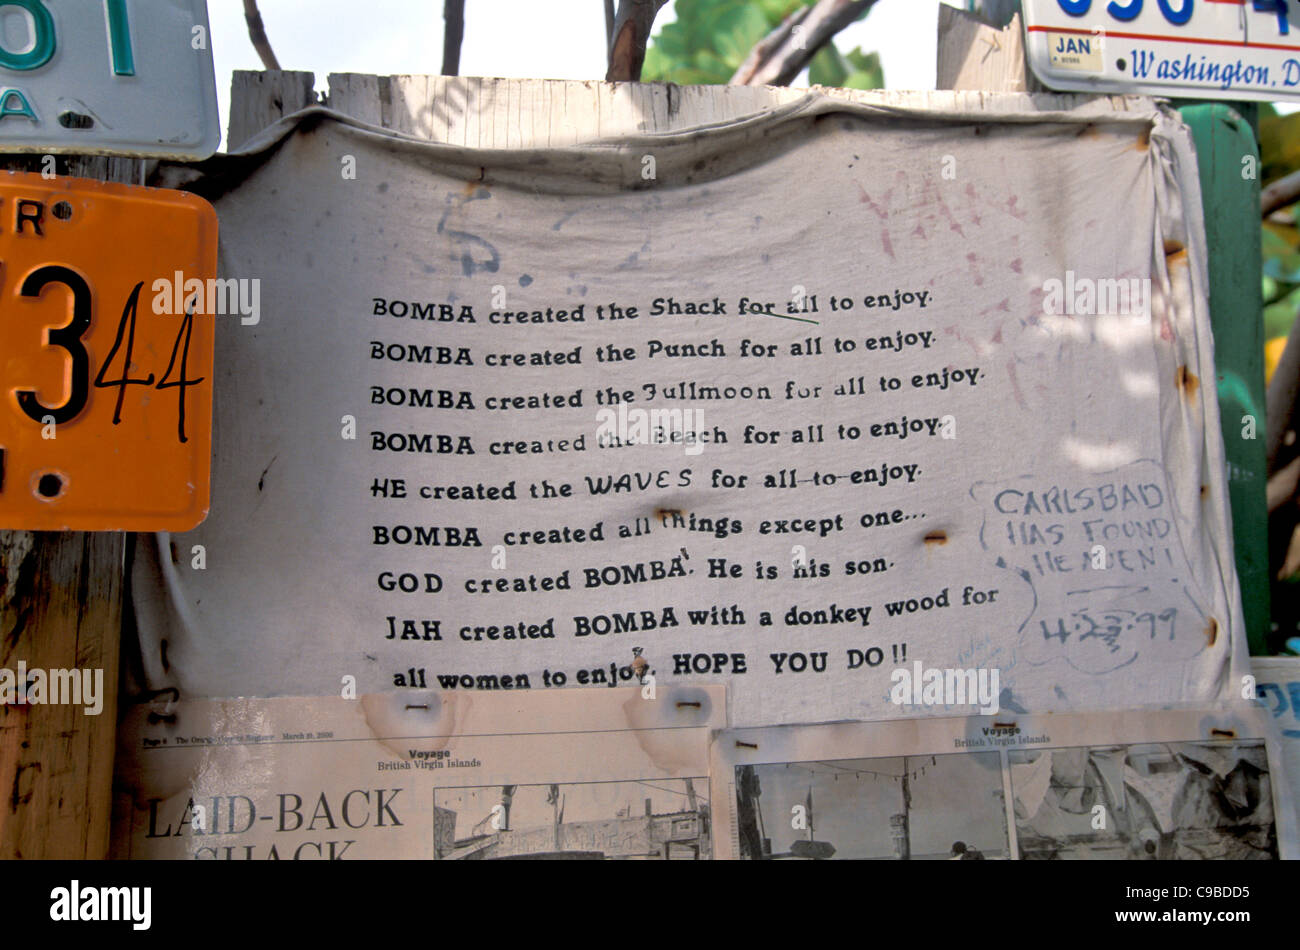 Bomba Shack, Tortola, Bomba manifesto explaining who Bomba is Stock Photo